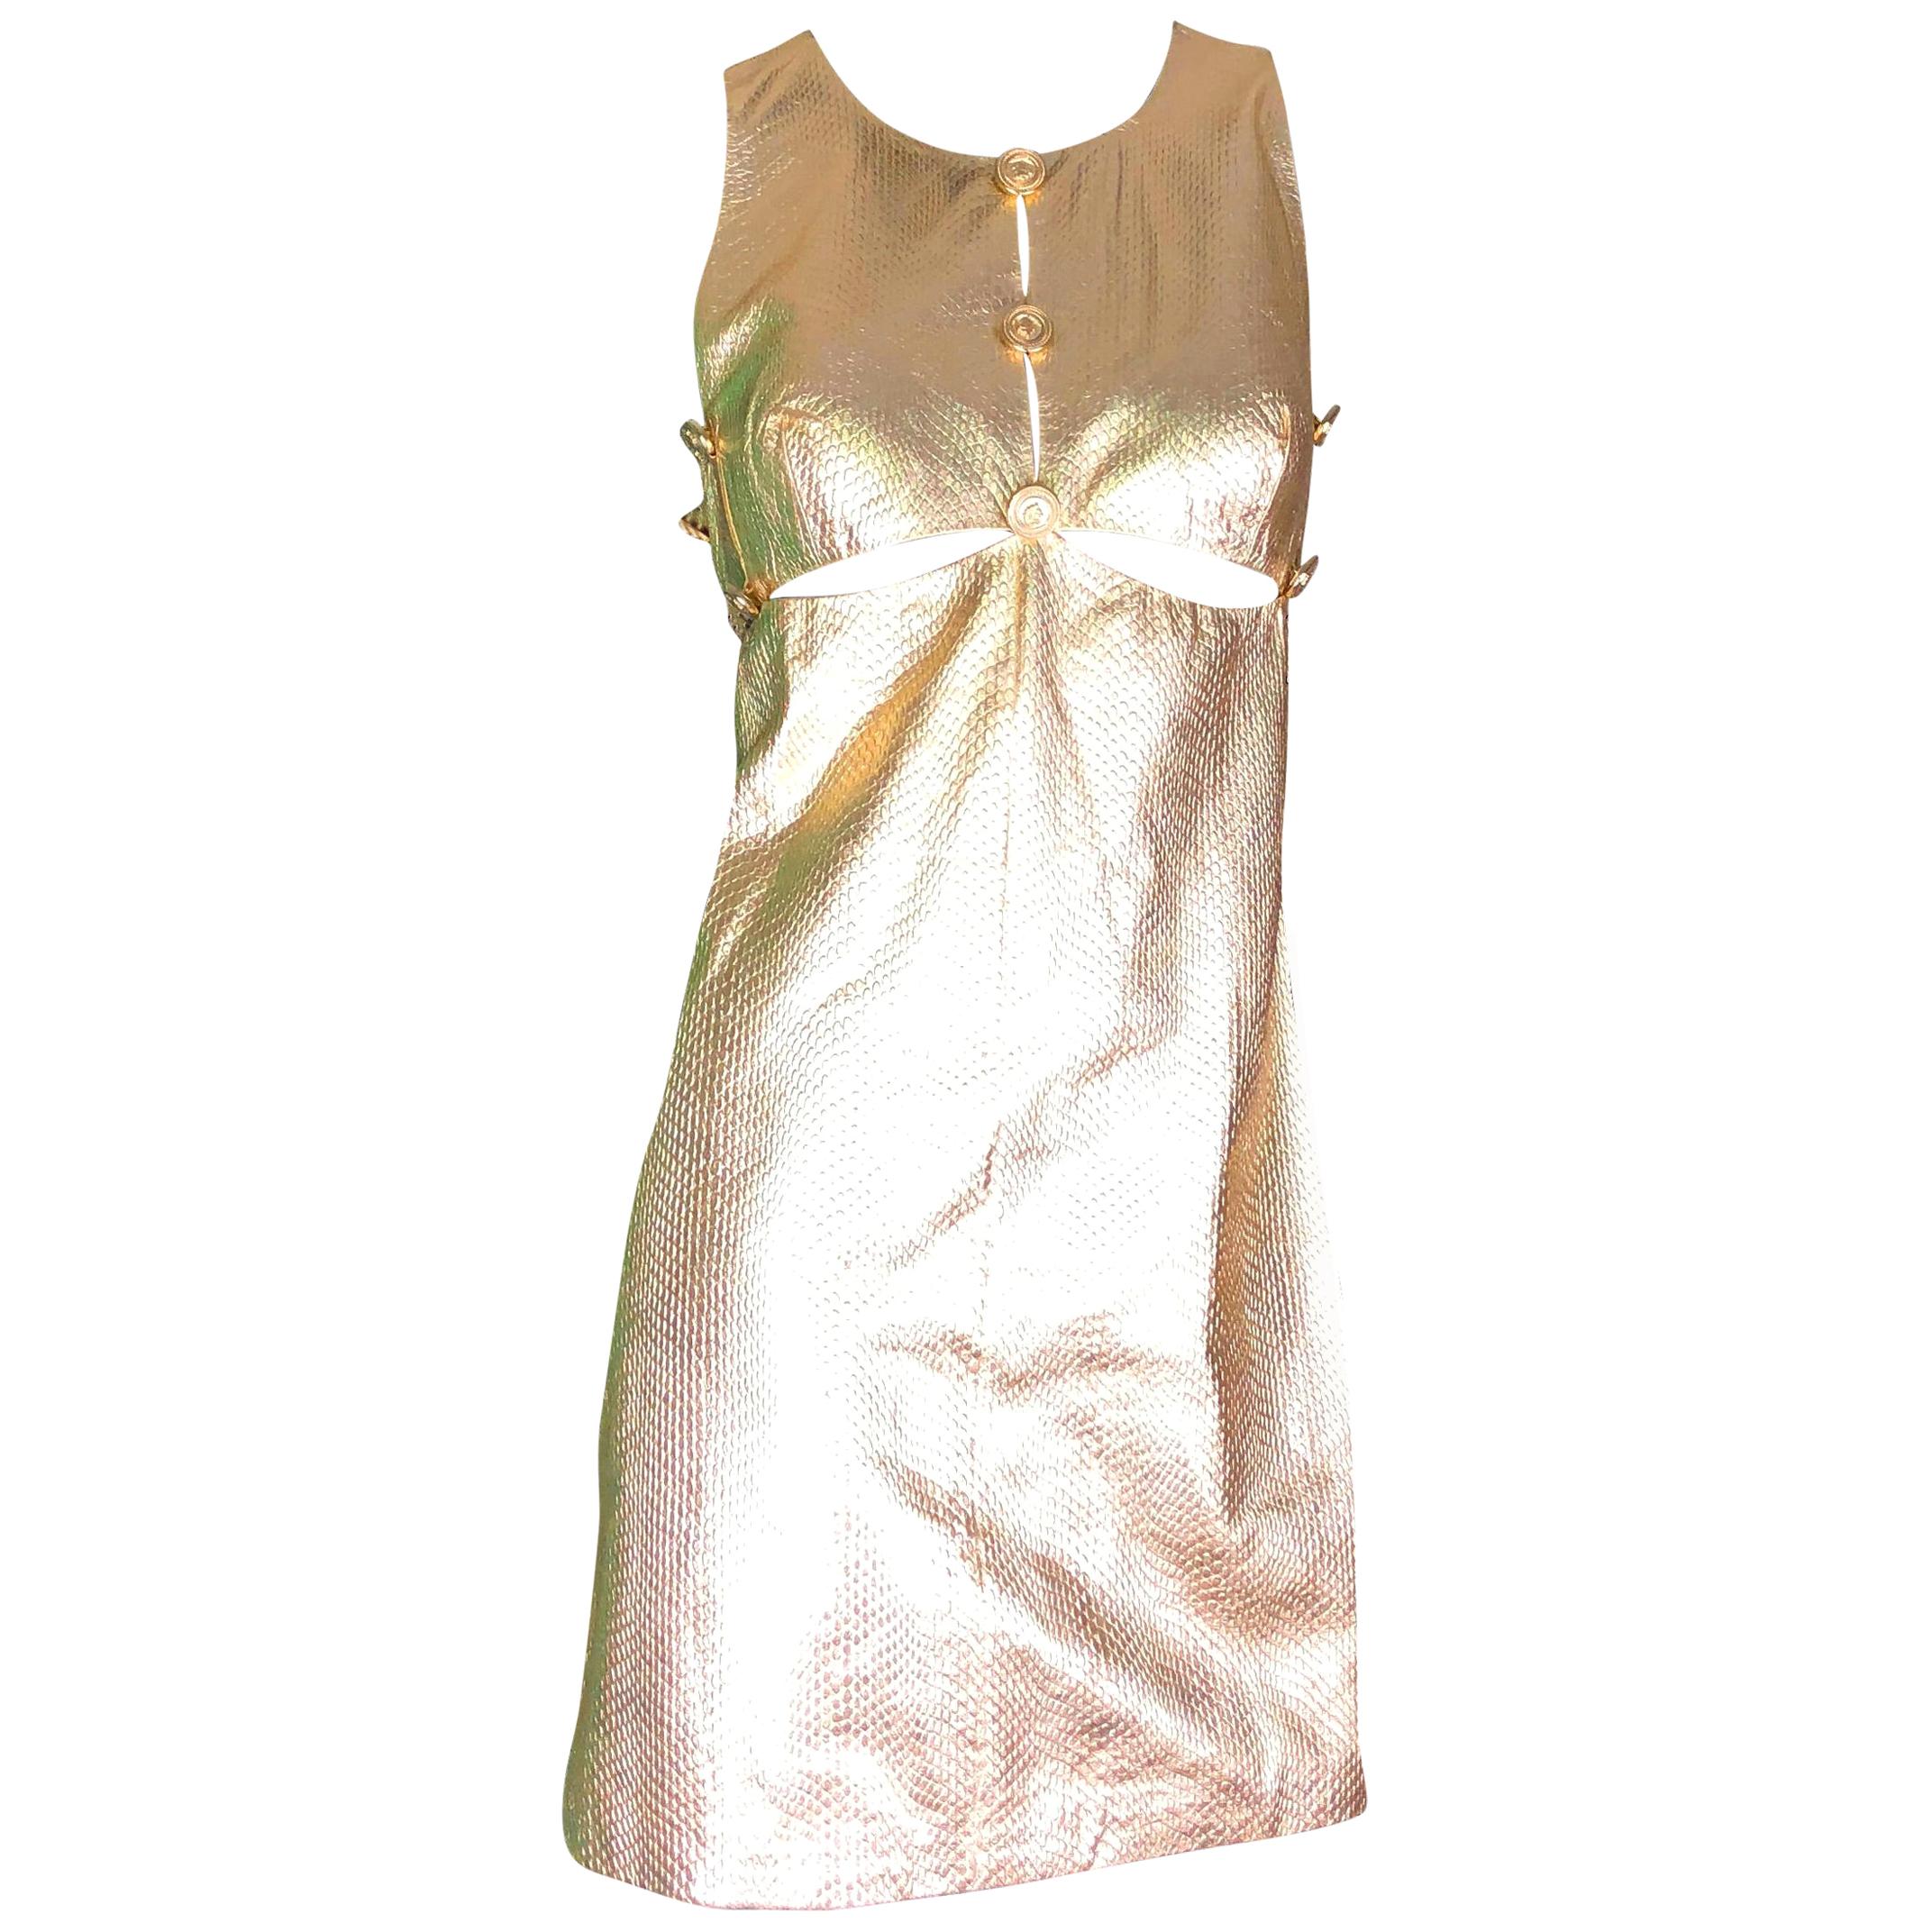 UNWORN Gianni Versace 1994 Medusa Metallic Golden Leather Dress Museum Piece 44 en vente